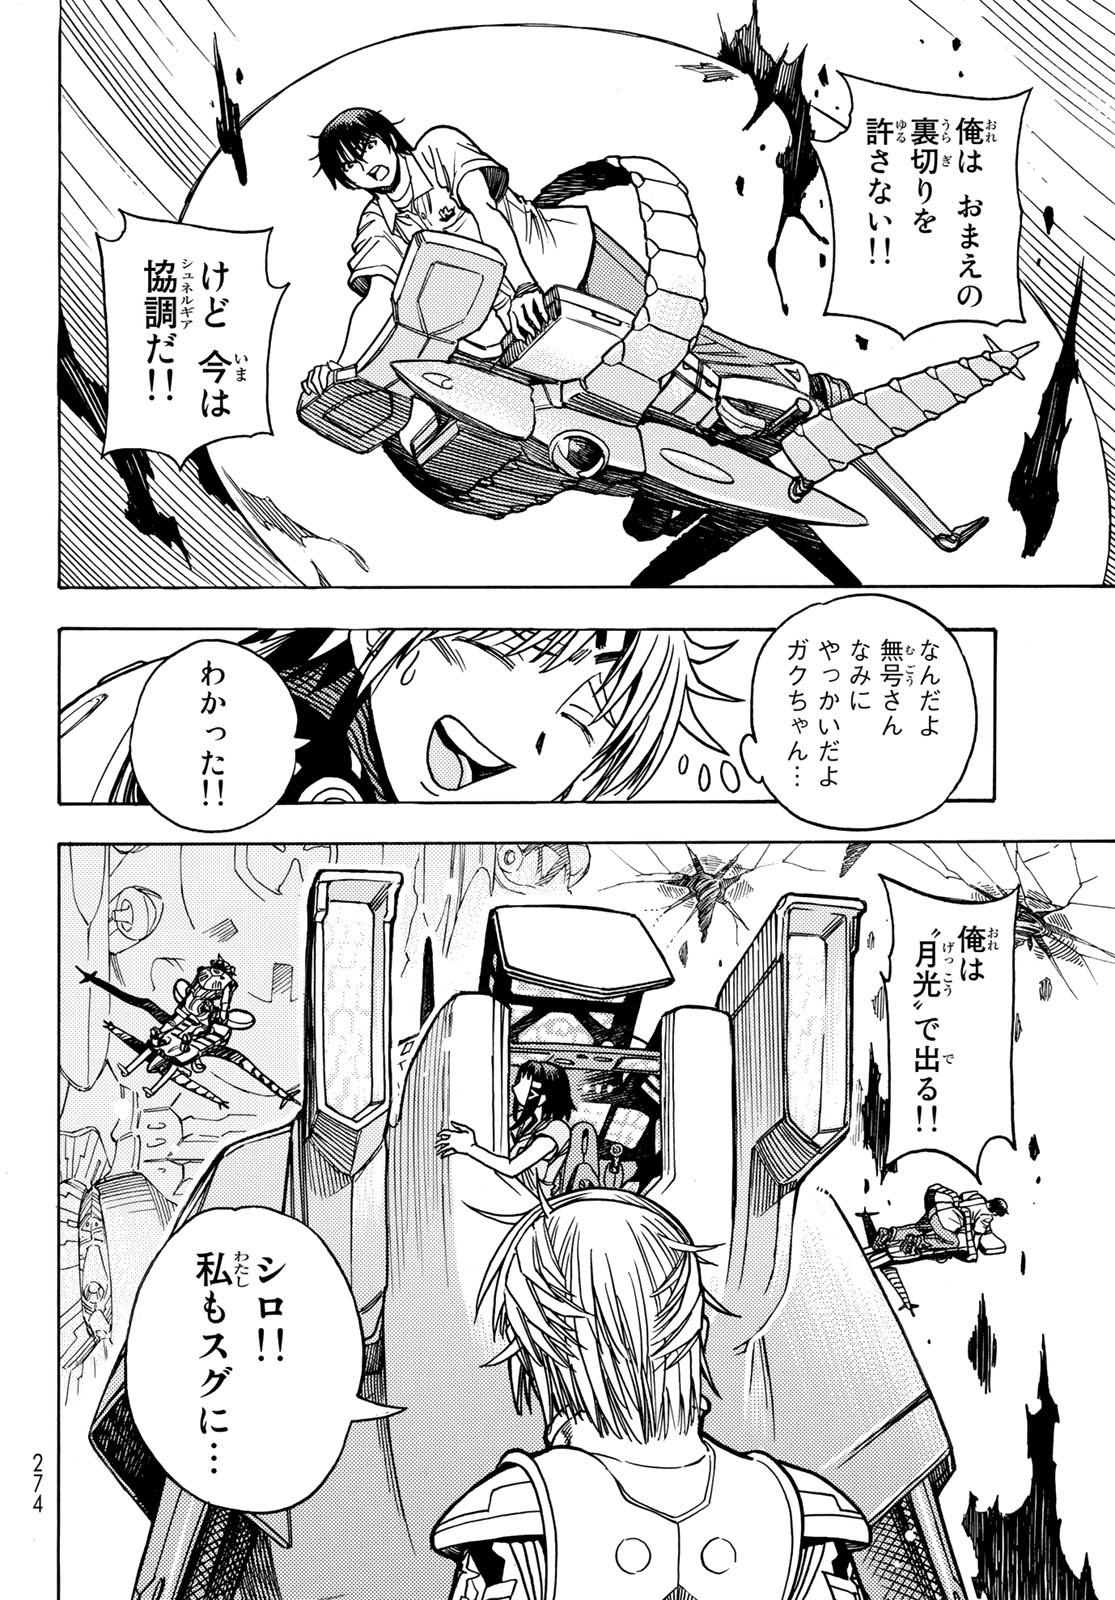 Mugou no Schnell Gear: Chikyuugai Kisouka AI - Chapter 45 - Page 10